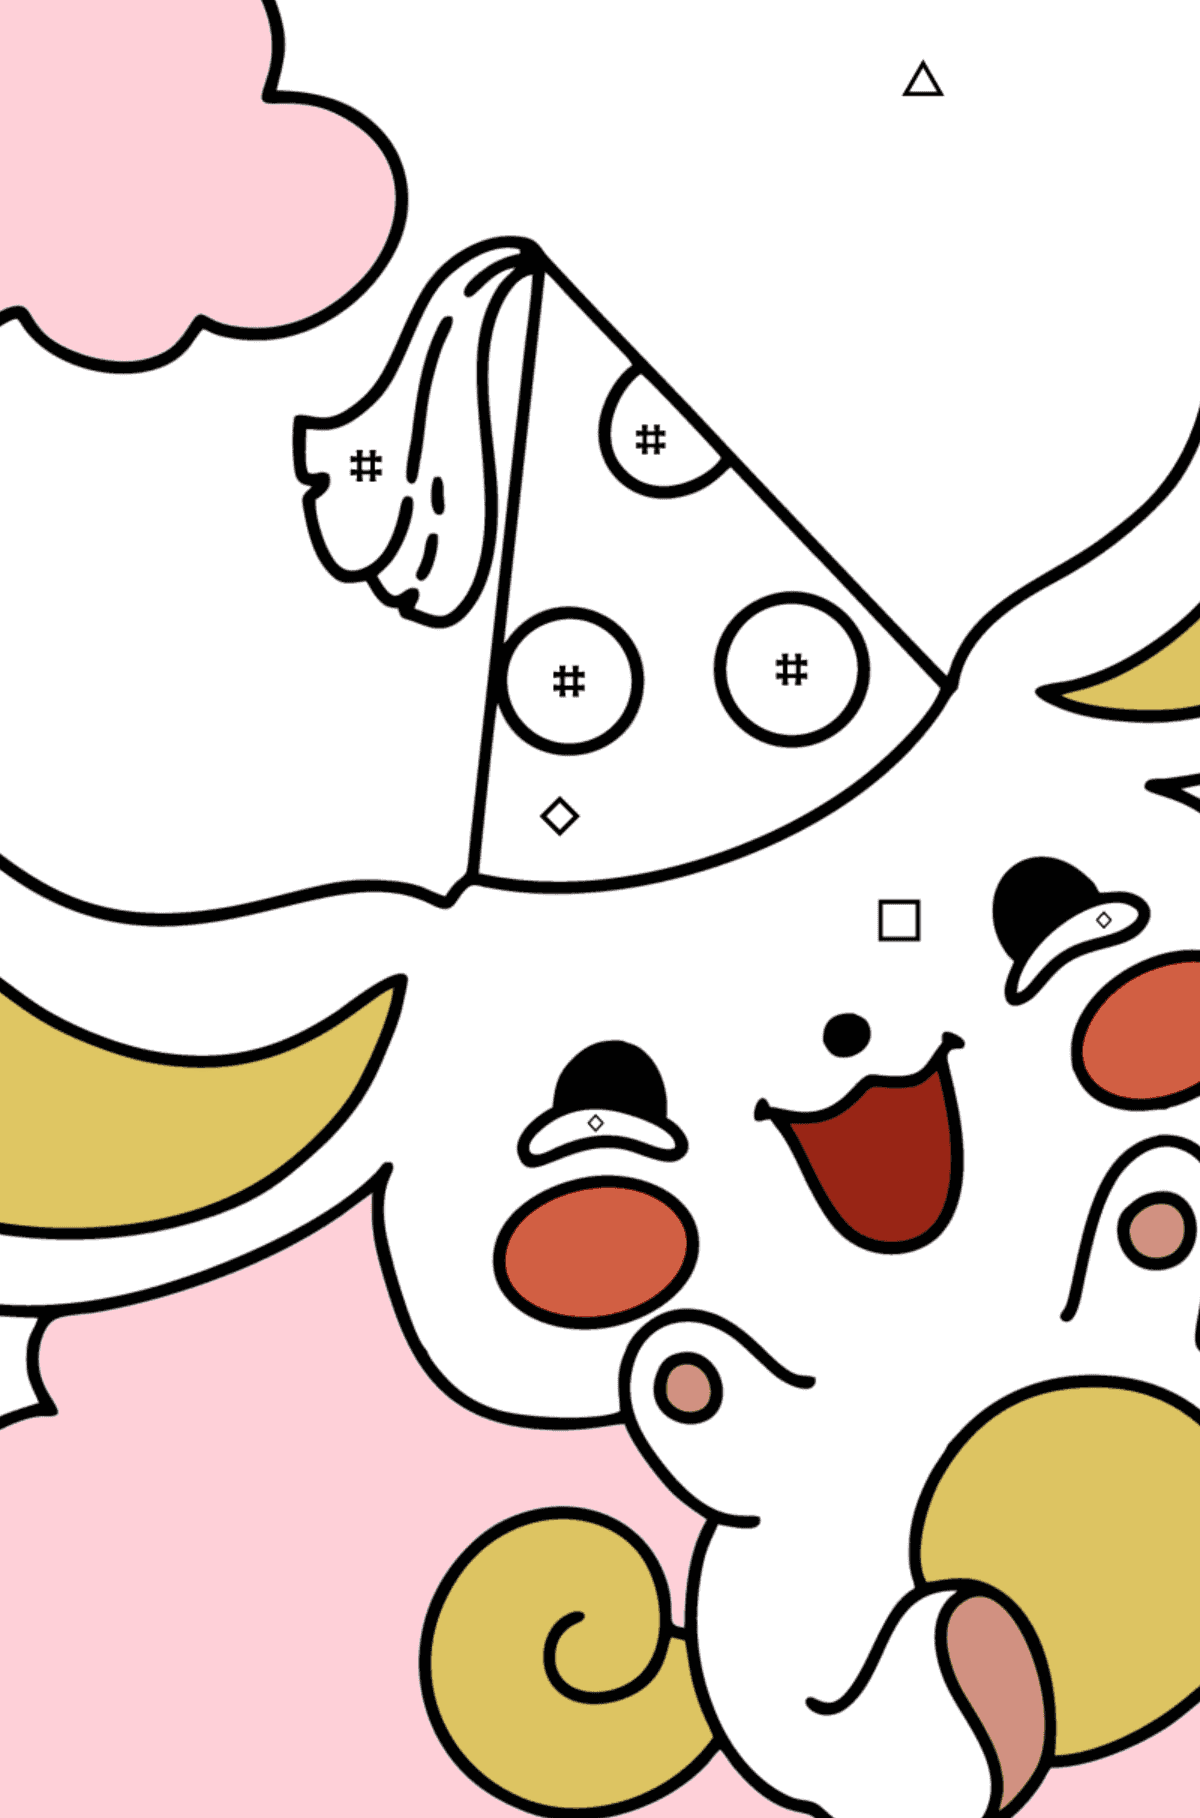 Kolorowanka Hello Kitty Chinnamoroll - Kolorowanie według symboli i figur geometrycznych dla dzieci